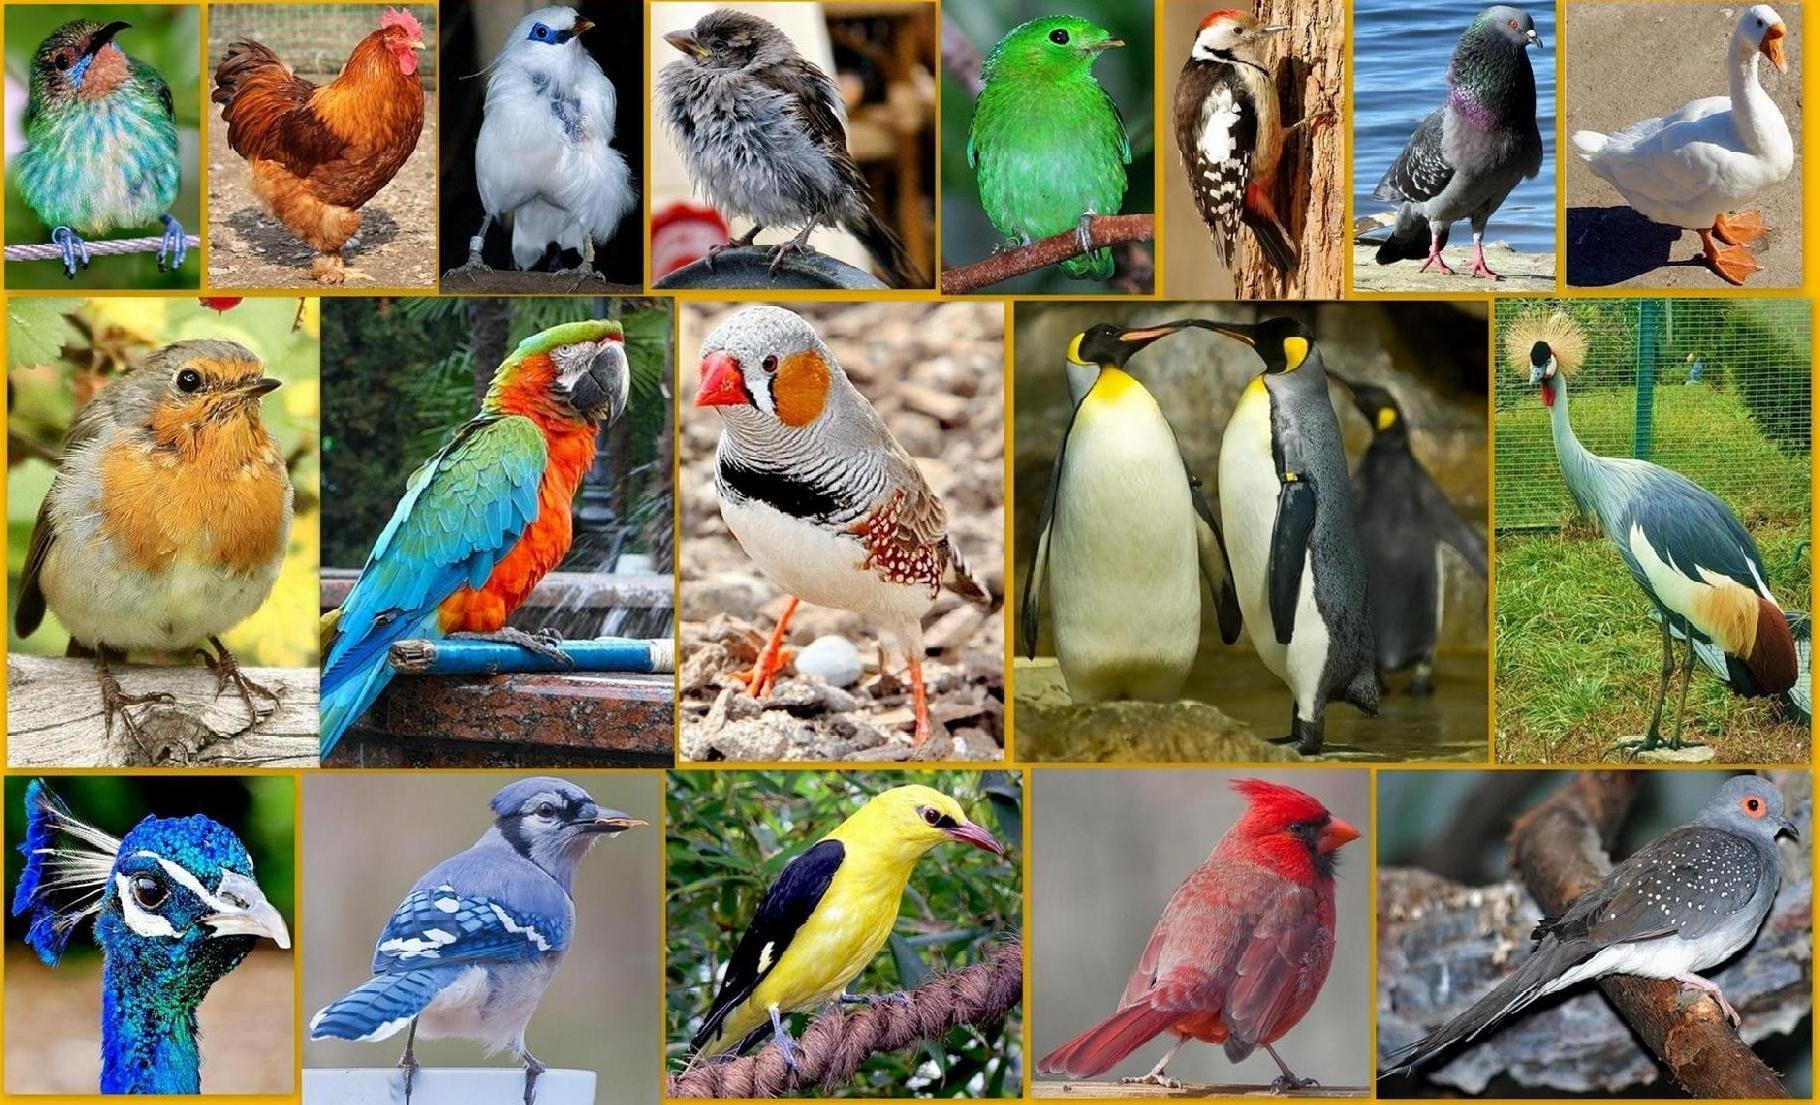 Все разновидности птиц фото и названия